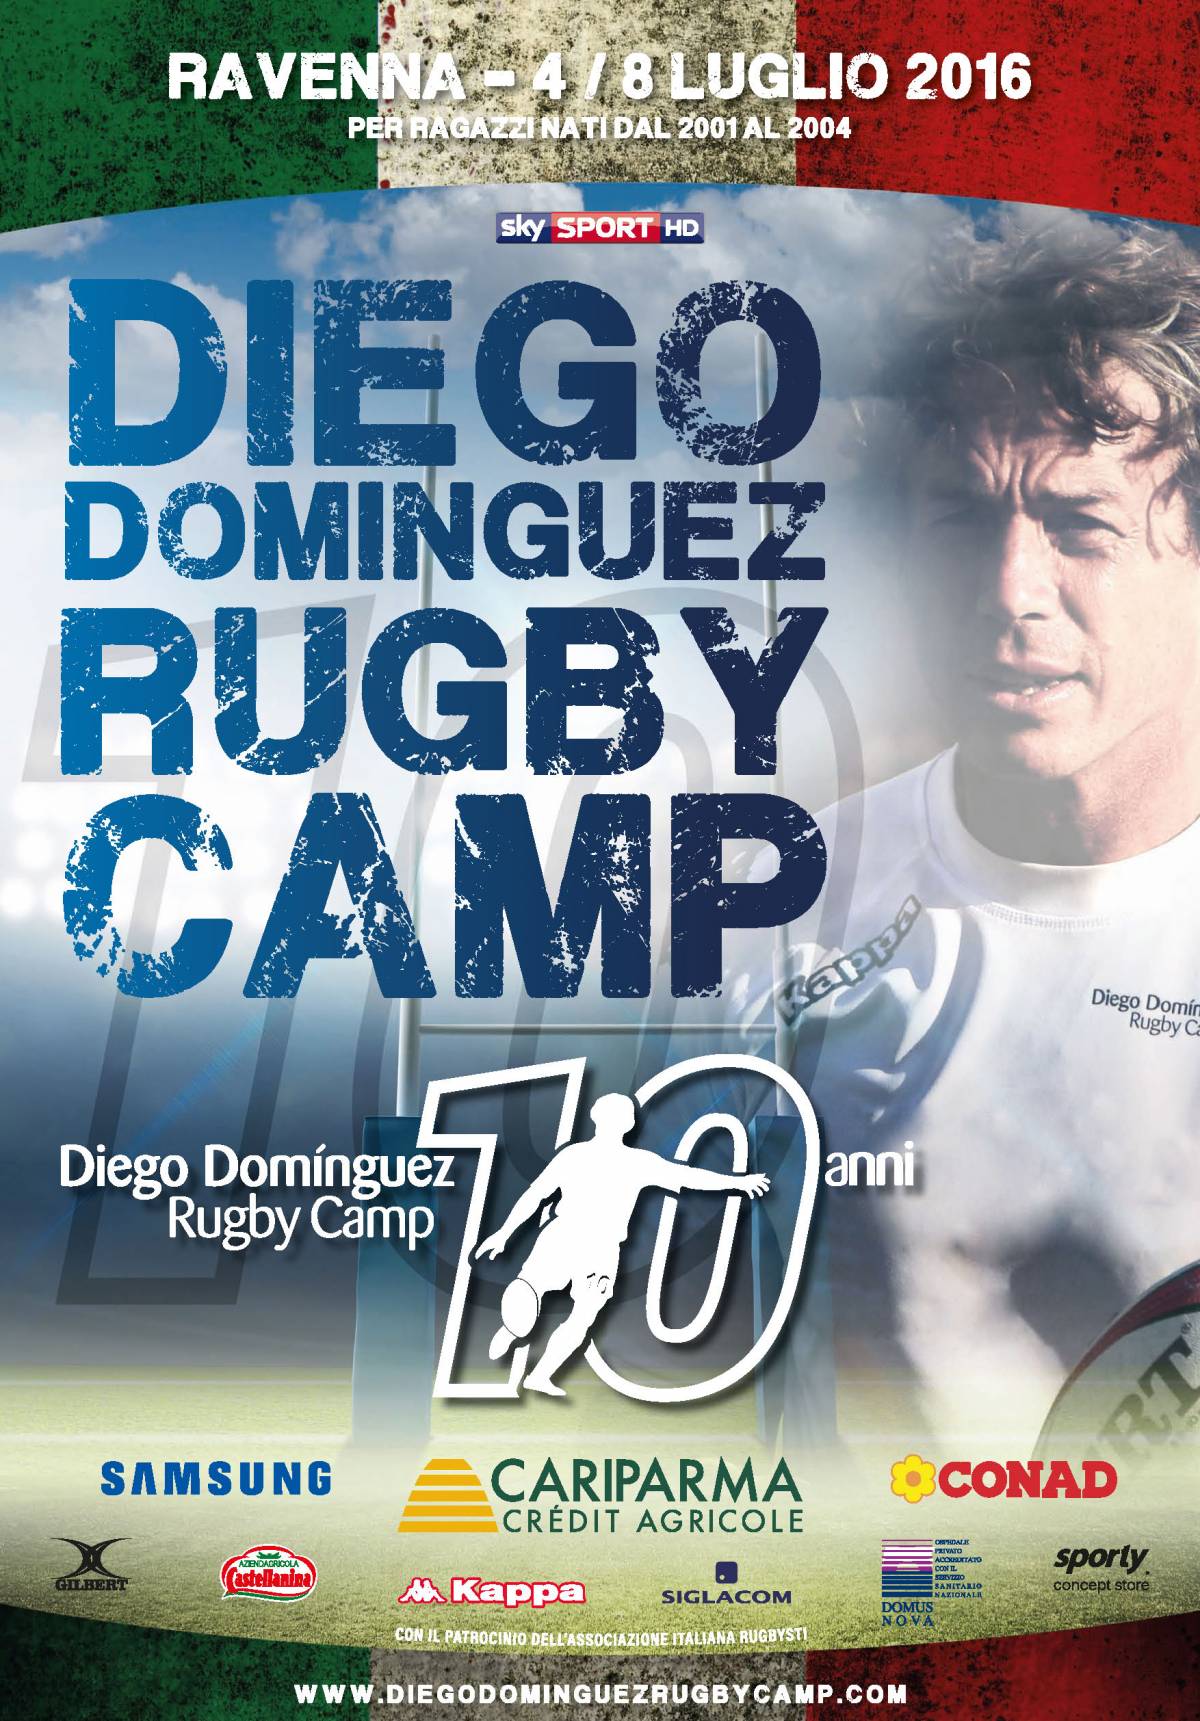 Torna il Diego Dominguez Rugby Camp: lo sport pulito al centro della decima edizione